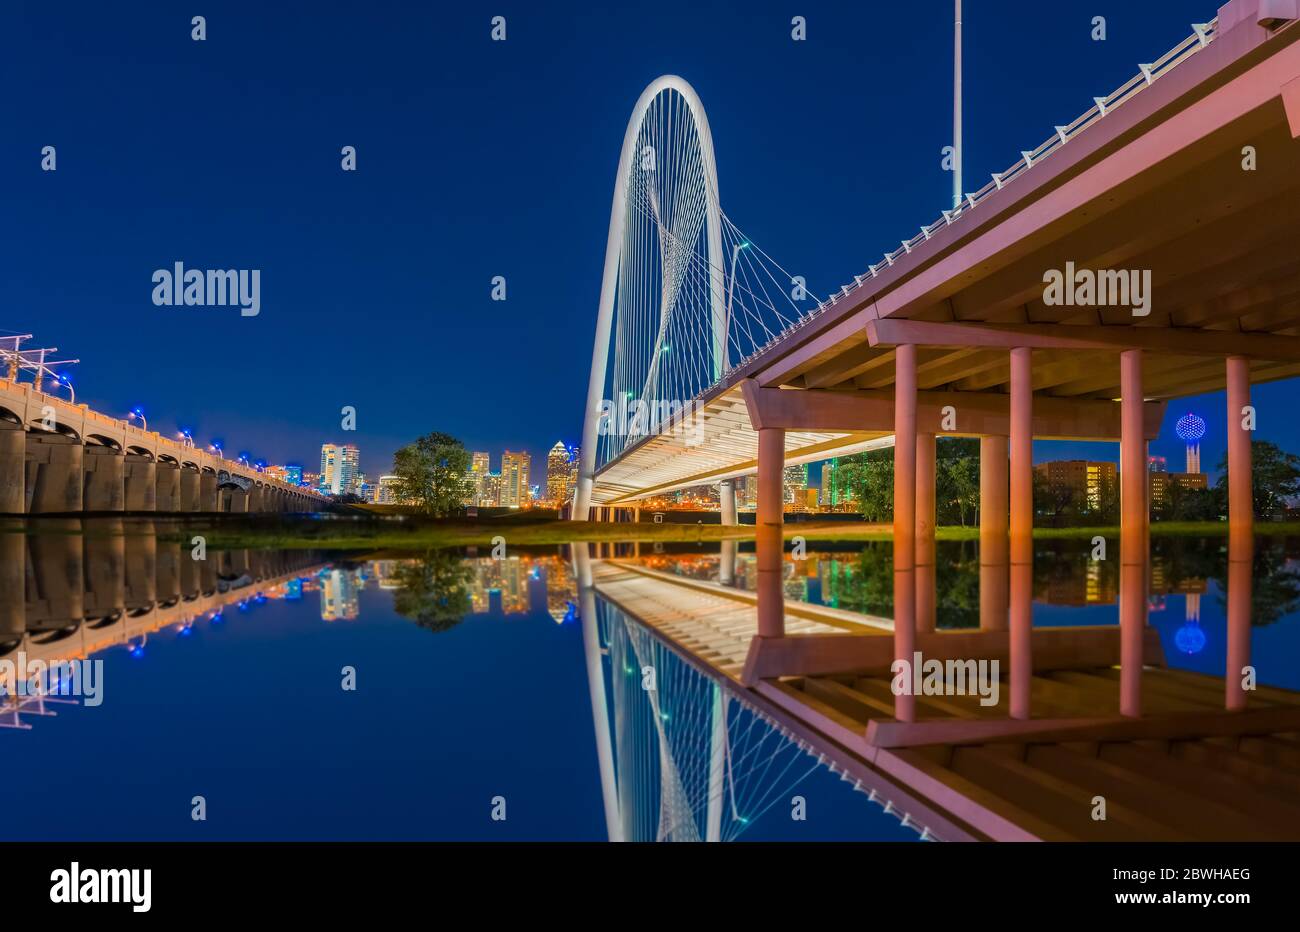 Le luci notturne riempiono il cielo e si riflettono nell'acqua sotto il ponte di Dallas, Texas. Foto Stock